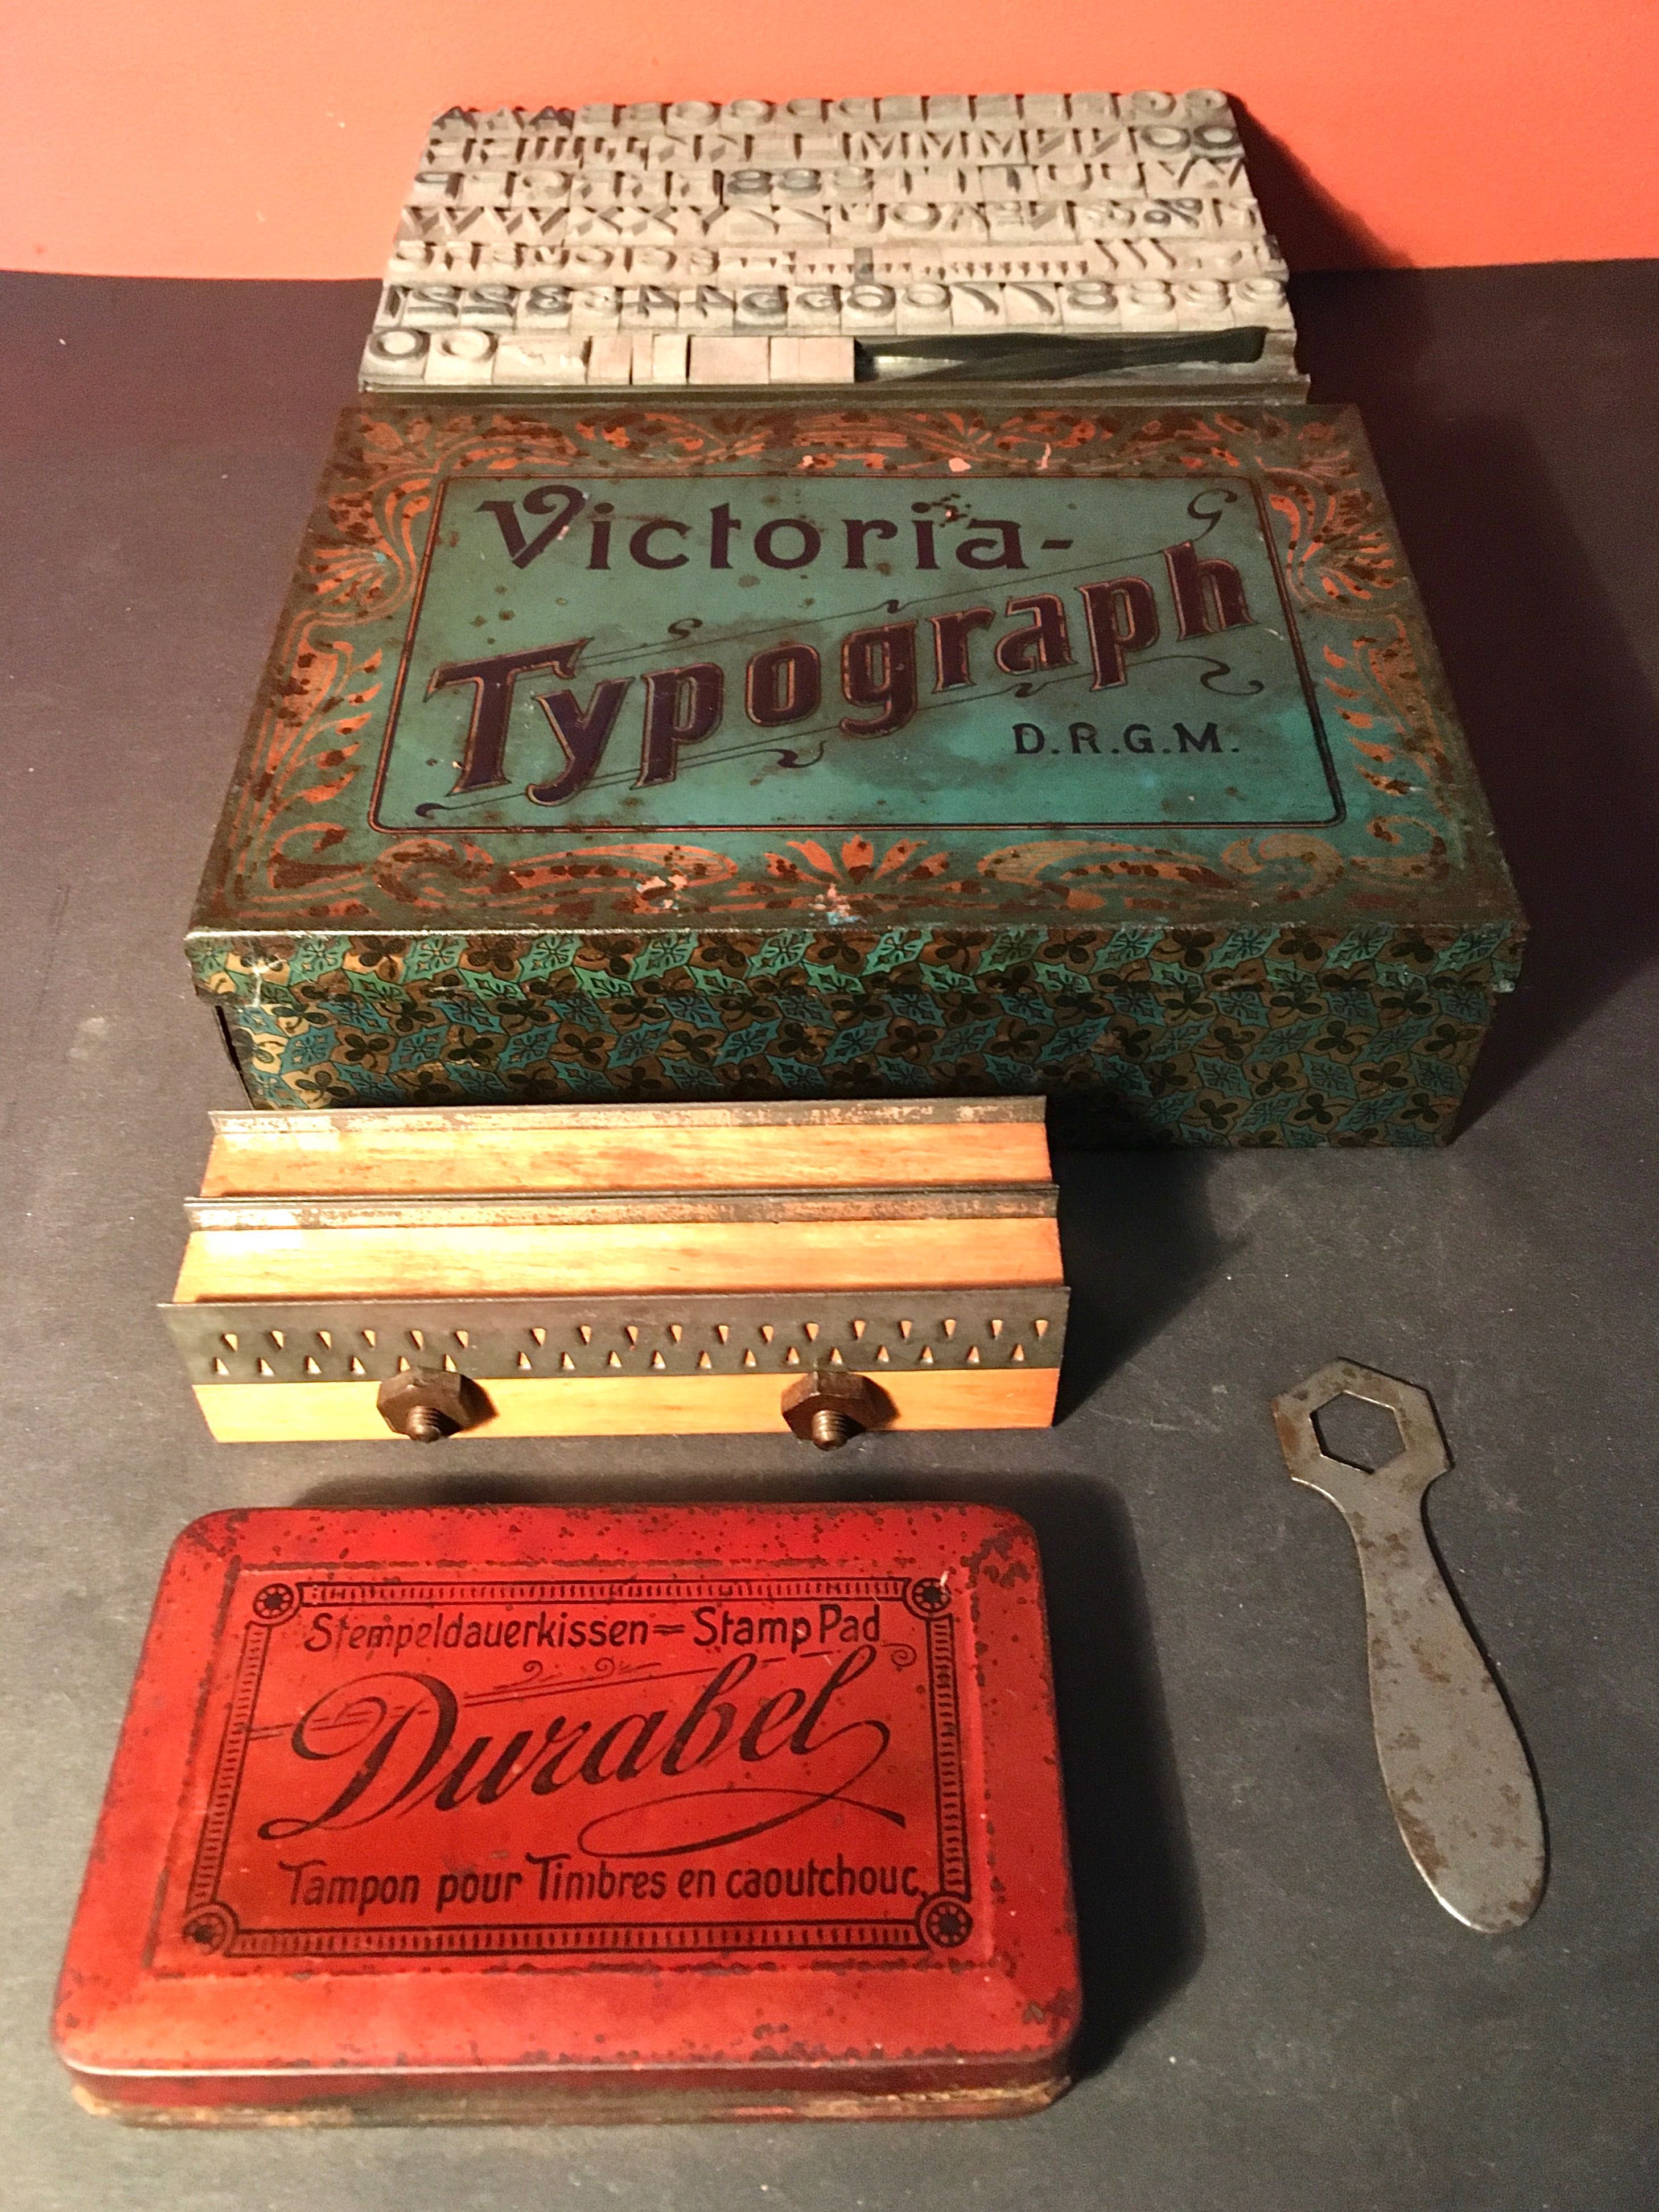 VICTORIA TYPOGRAPH - D.R.G.M. - estojo de tipografia - 19x14,2x5 cm/s